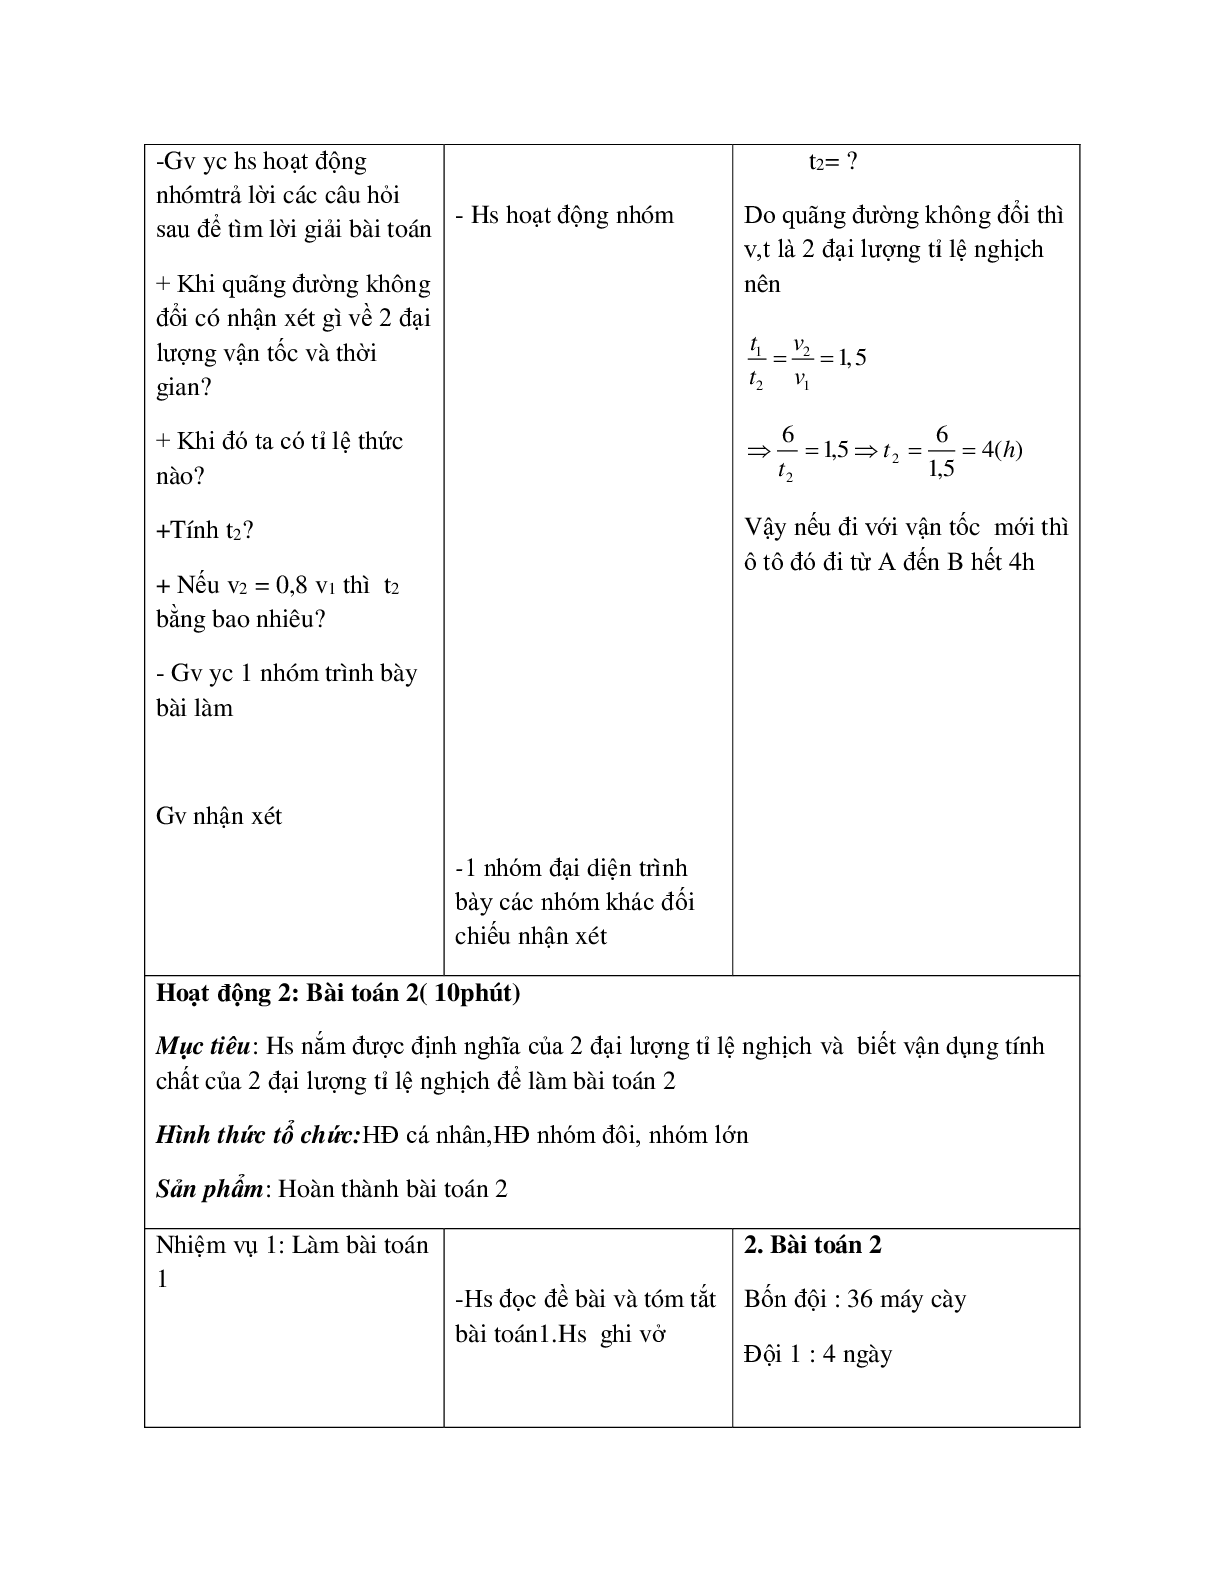 Giáo án Toán học 7 bài 4: Một số bài toán về đại lượng tỉ lệ nghịch (tiếp theo) hay nhất (trang 9)